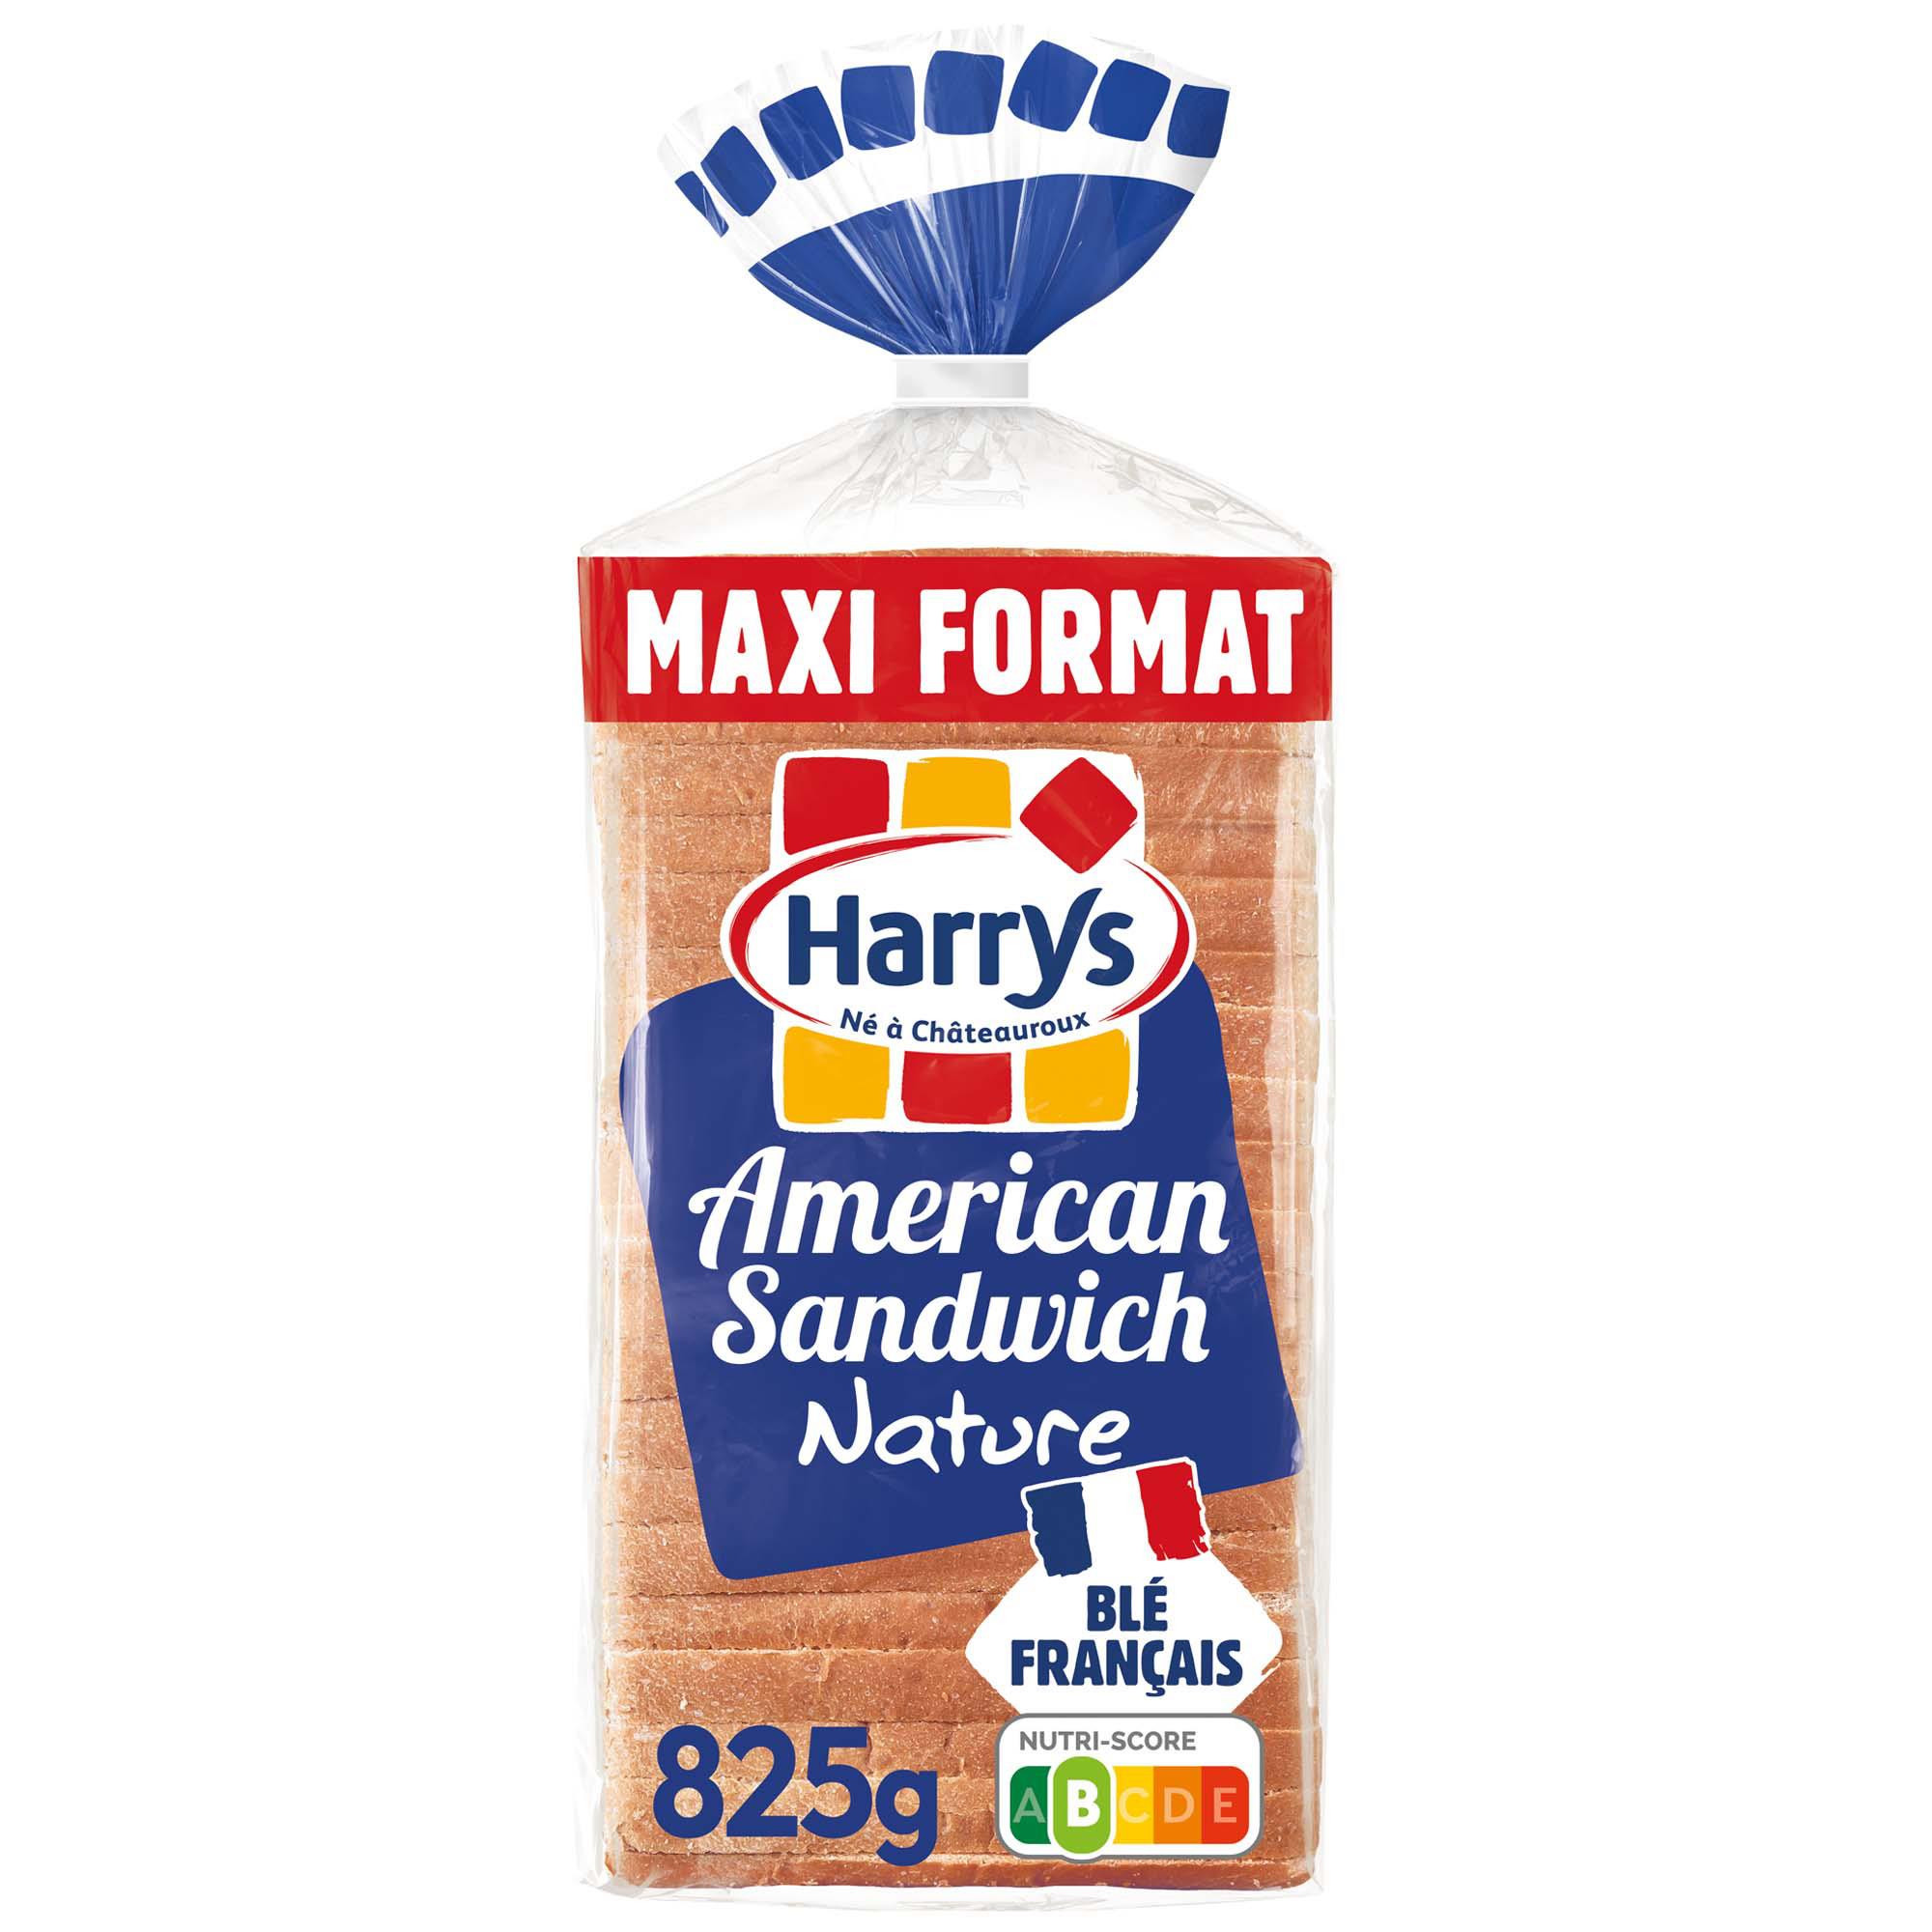 Harry's Harrys Pain de mie American Sandwich Nature Maxi le paquet de 21 tranches - 825g